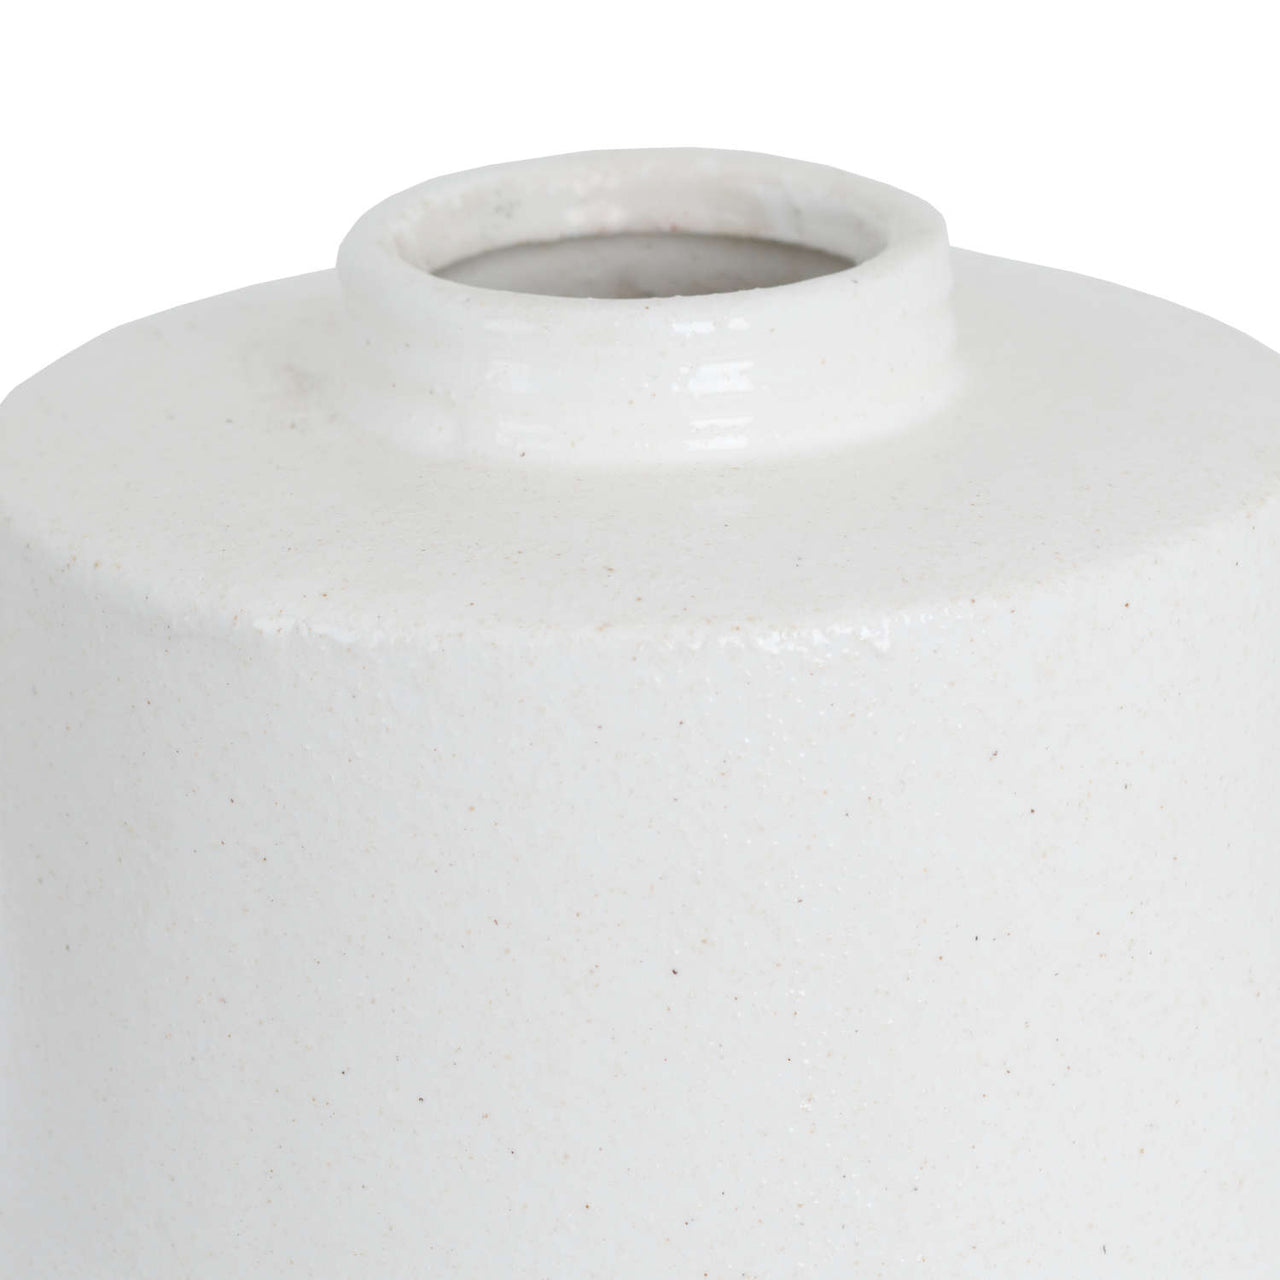 White and Grey Cylindrical Ceramic Vase